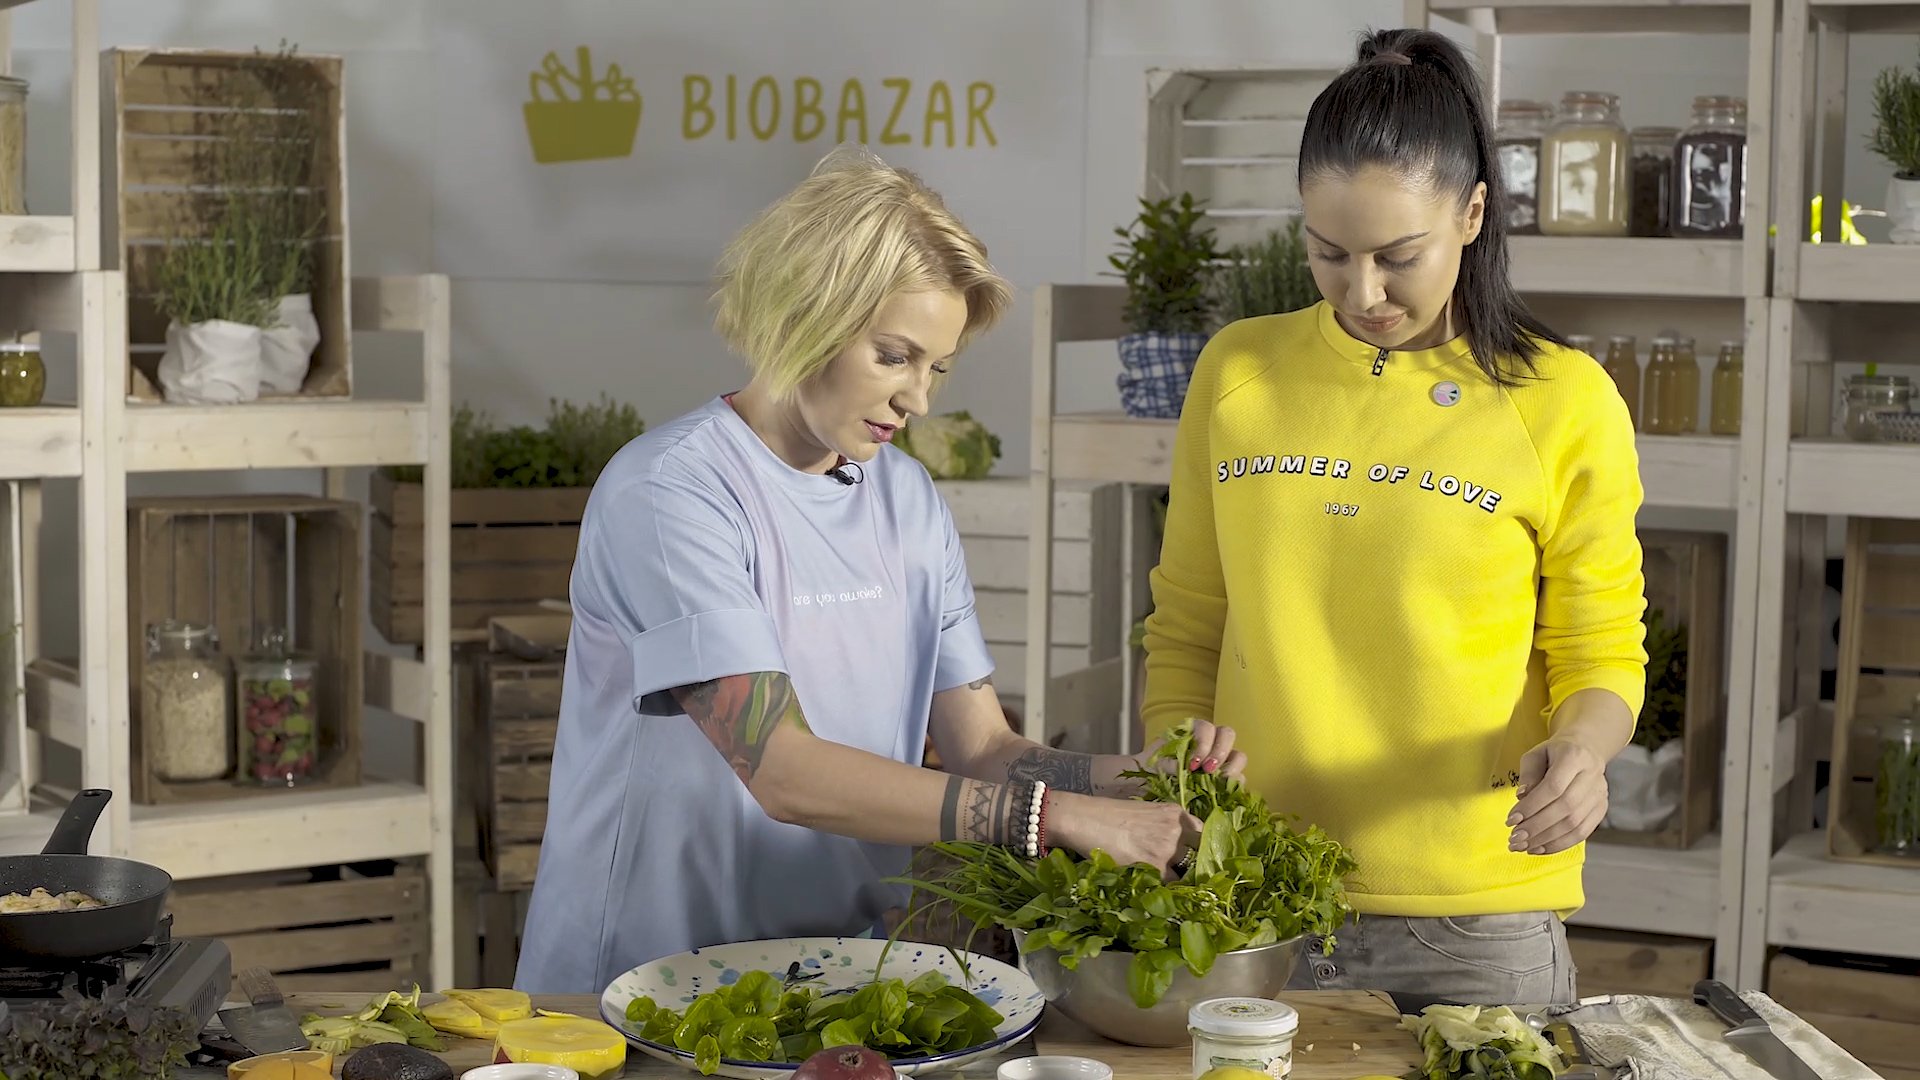 BioBazar i Daria Ładocha łączą siły, by tworzyć dania idealne dla dzieci, alergików, sportowców i wegan